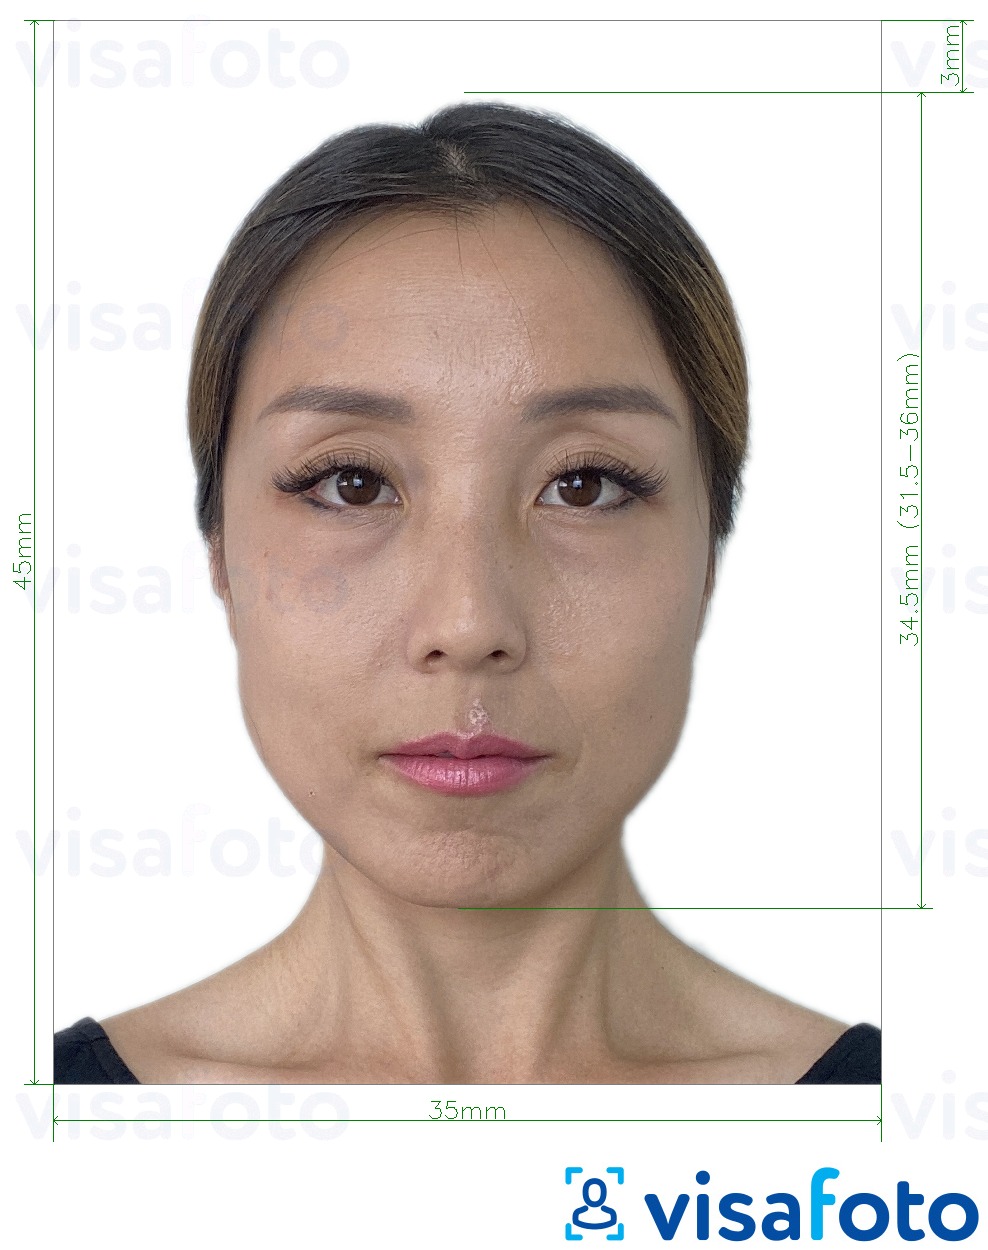 Przykład zdjęcia dla Tajwan wiza 35x45 mm (3,5x4,5 cm) z podaniem dokładnego rozmiaru.